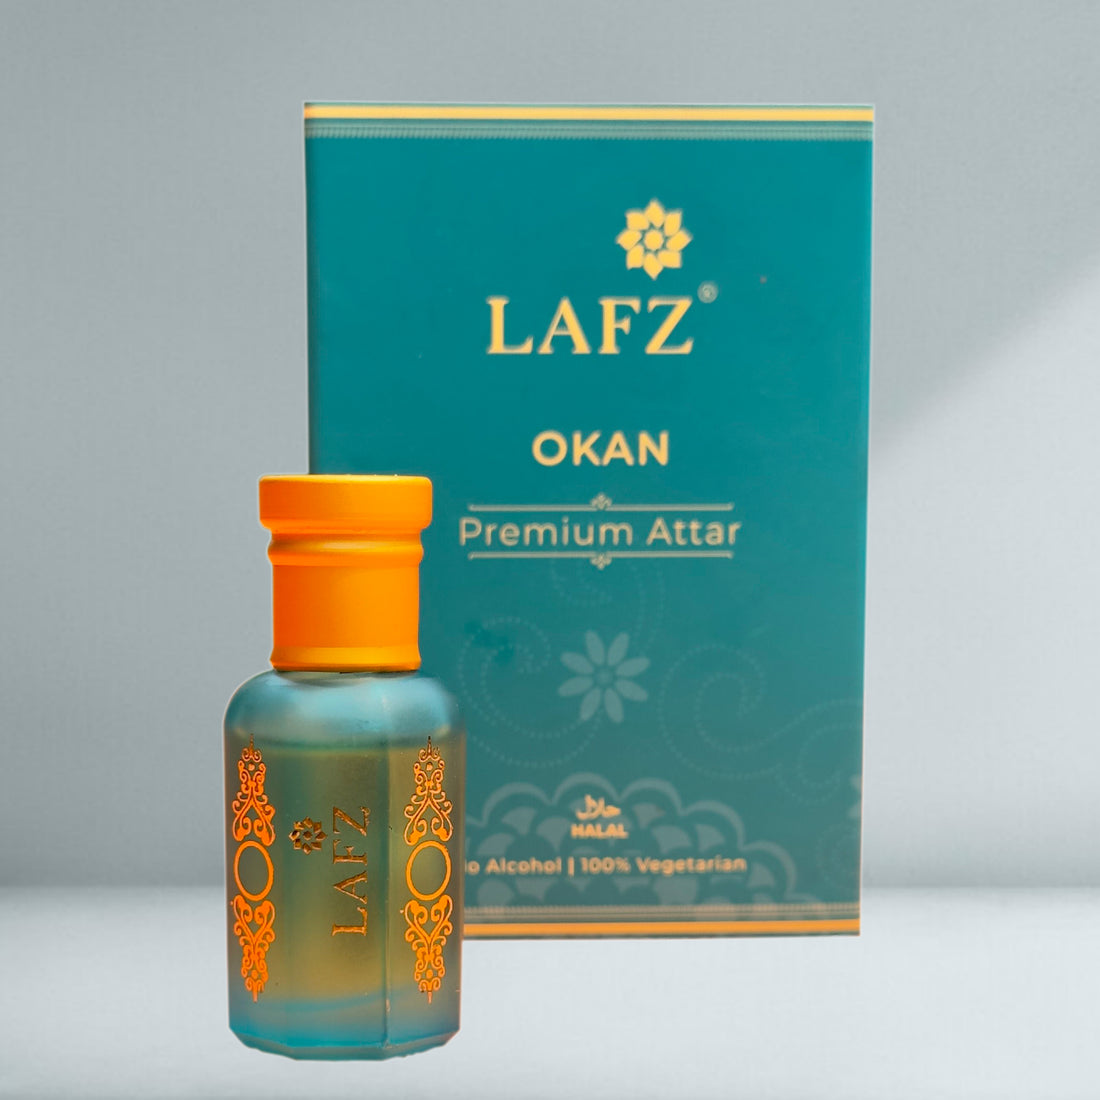 Lafz Premium Attar - Okan (10ml)